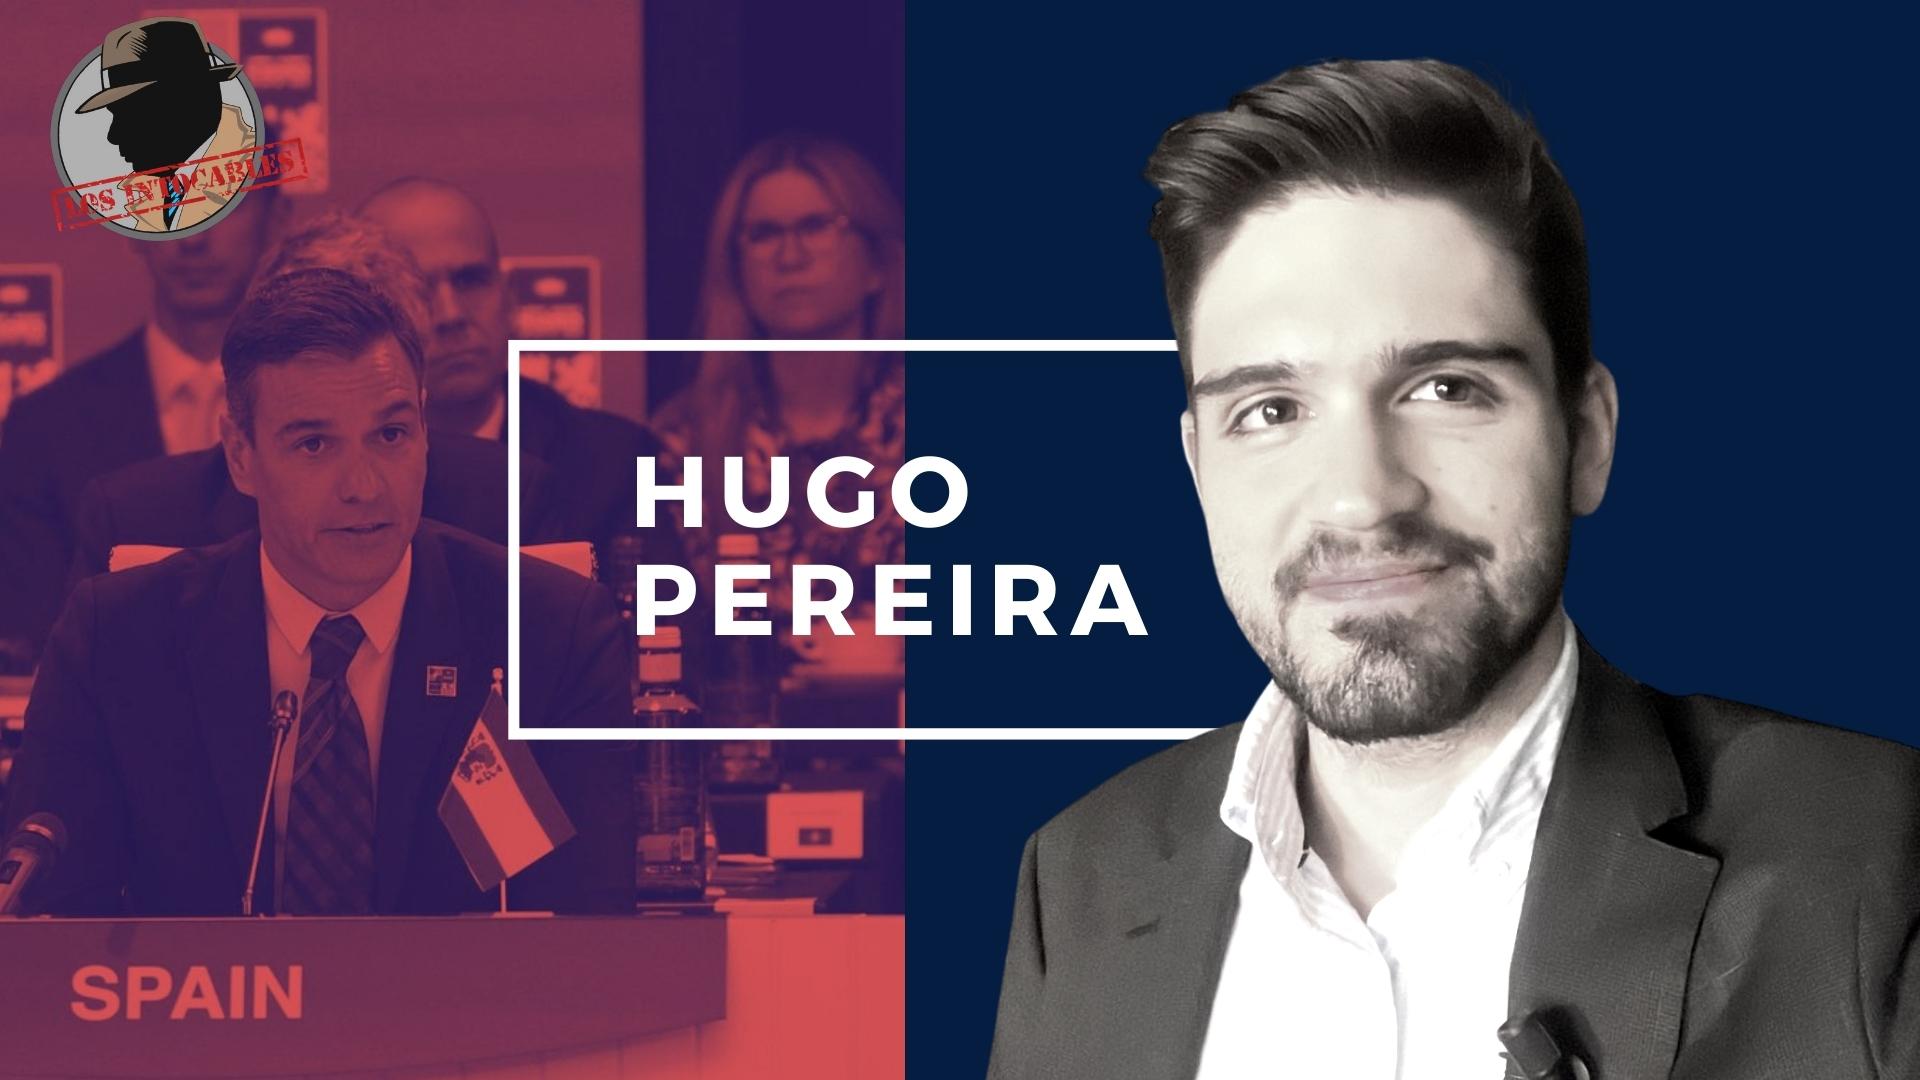 HUGO PEREIRA